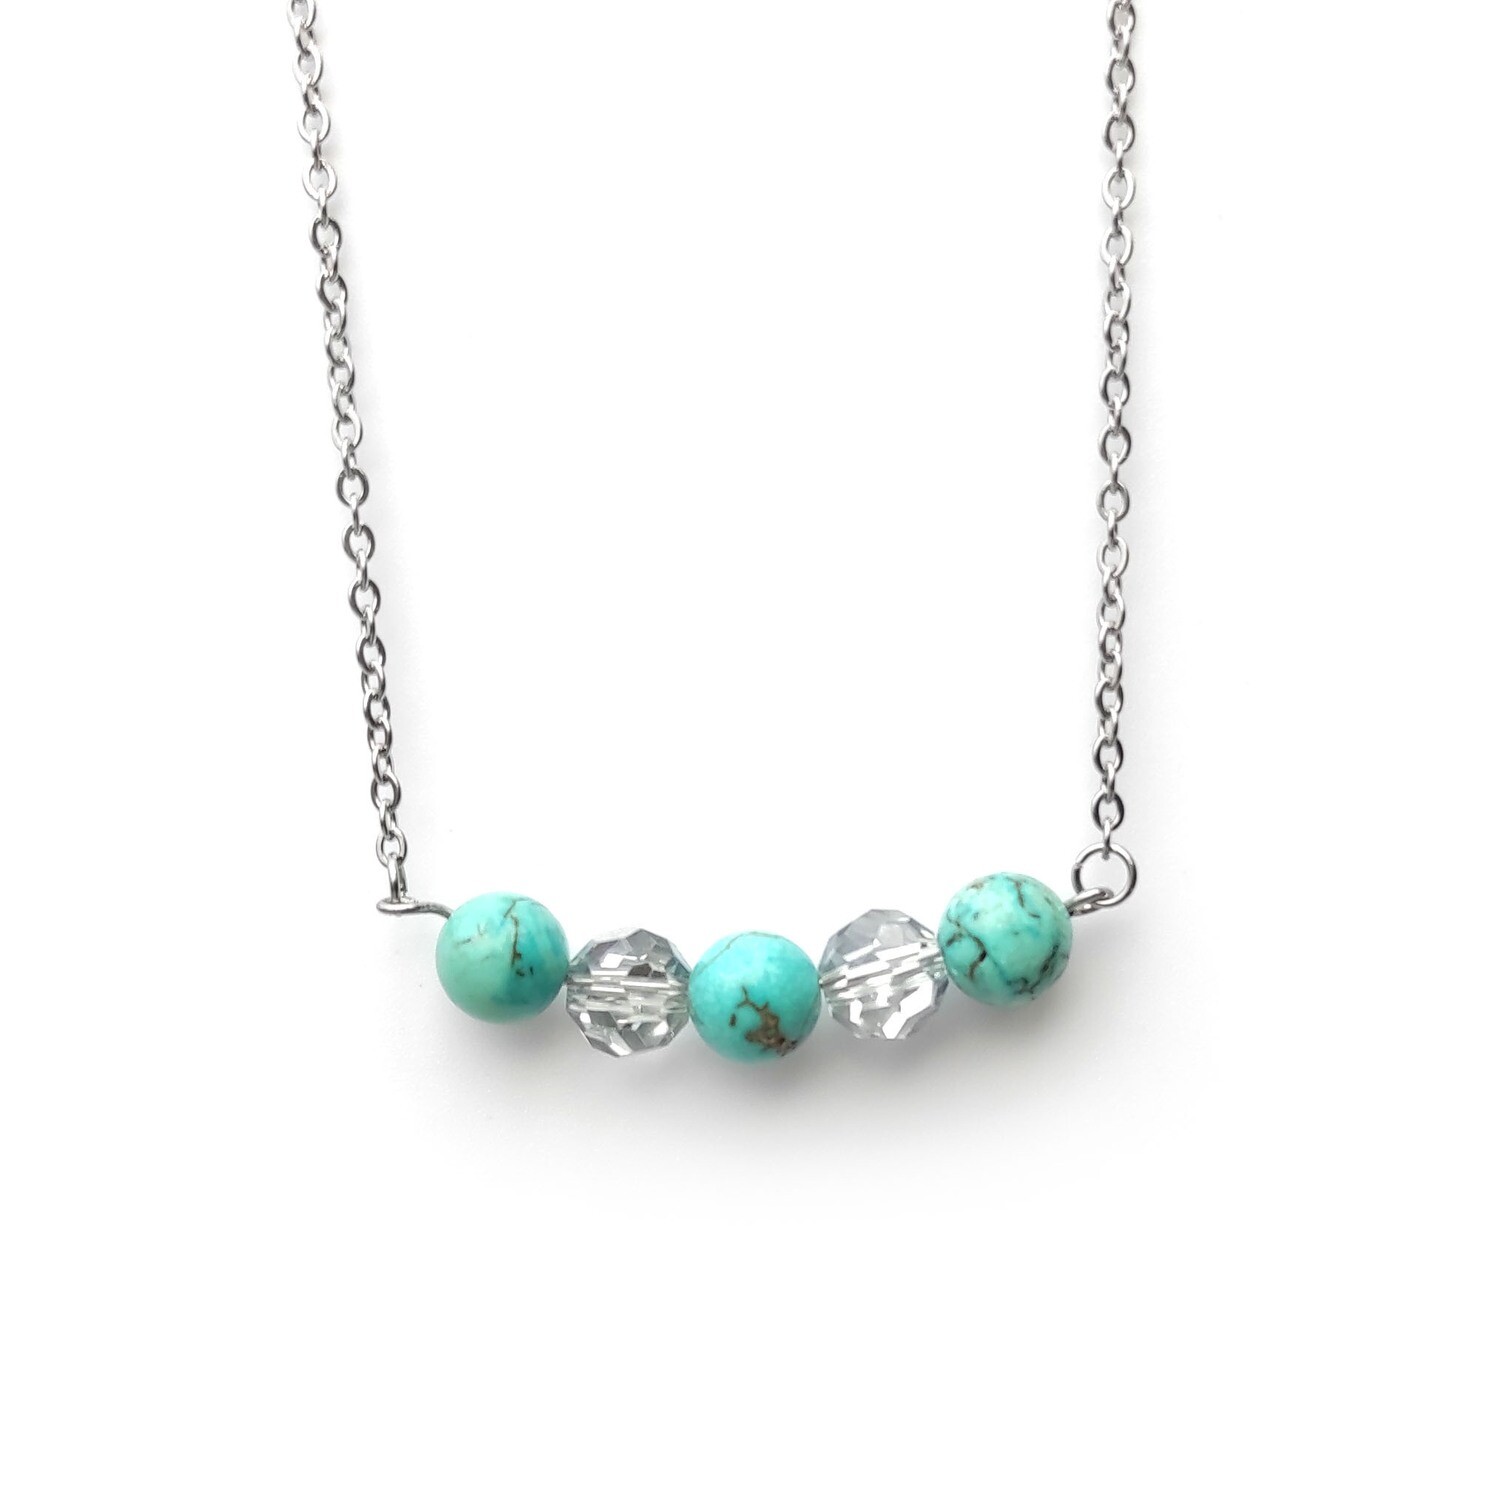 Turquoise gemstone necklace 